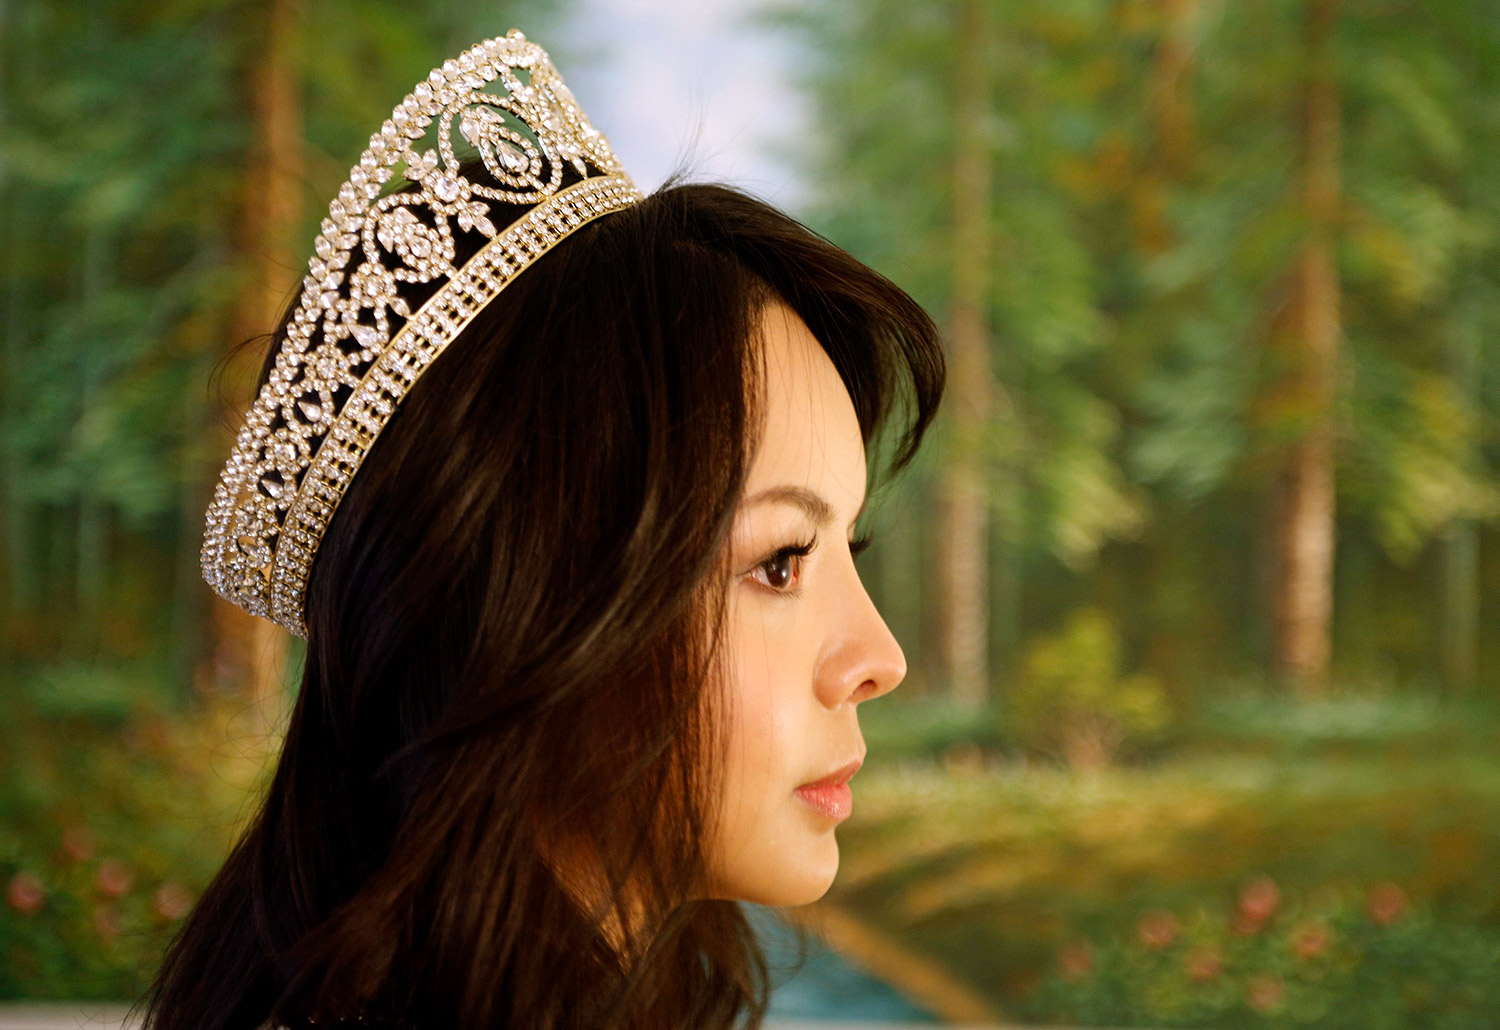 La reina de belleza a la que China le niega la entrada para el concurso de Miss Mundo (Fotos)